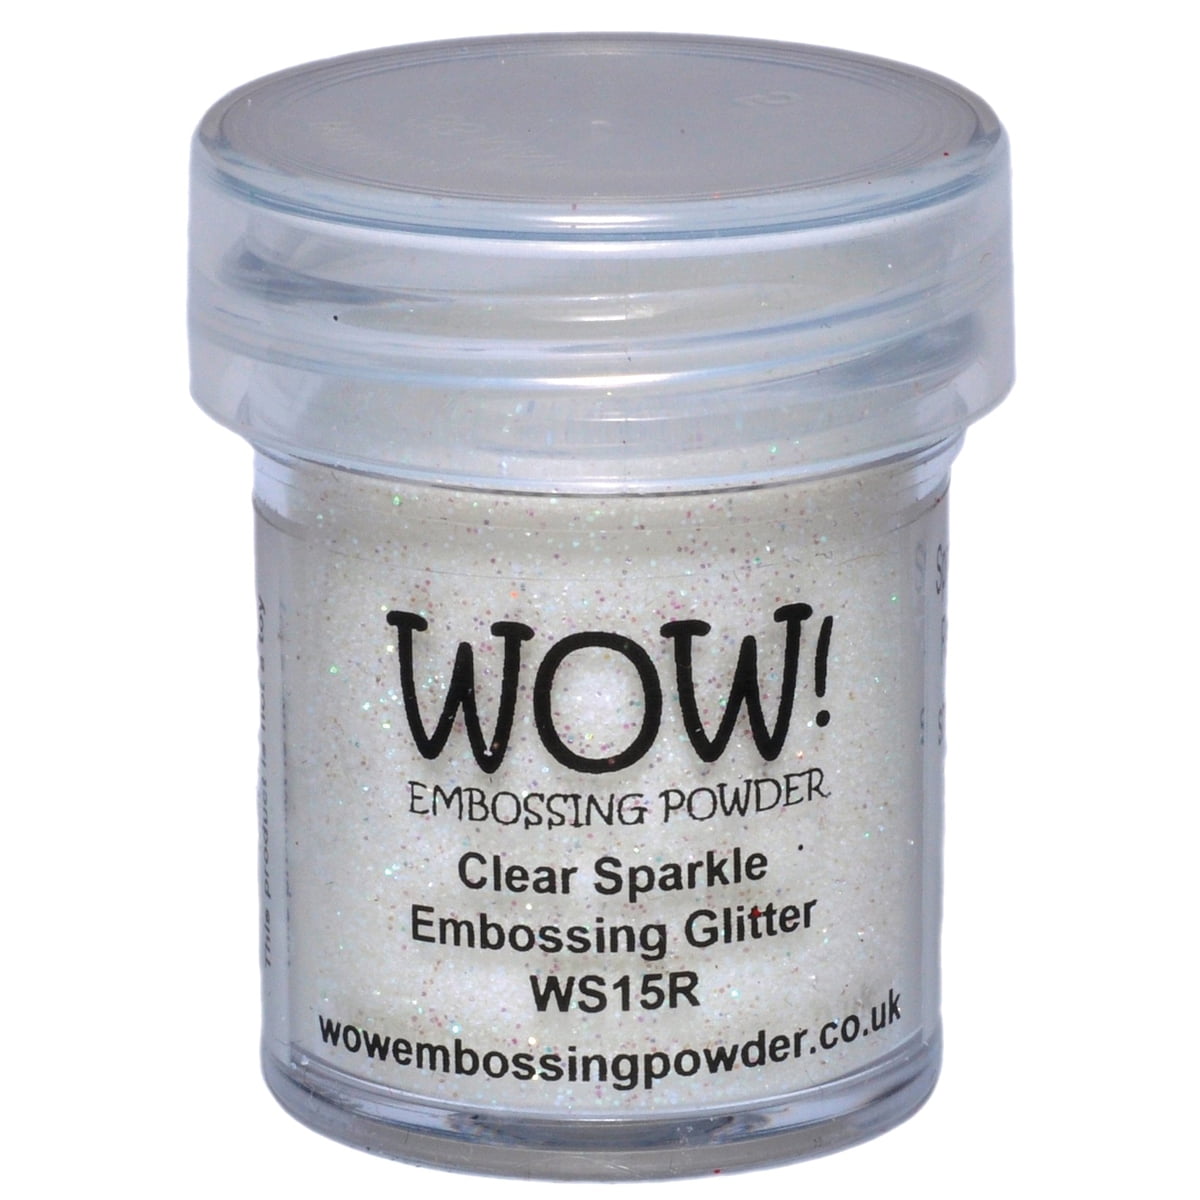 WOW - Embossing Powder Starter Kit - 5060210525736